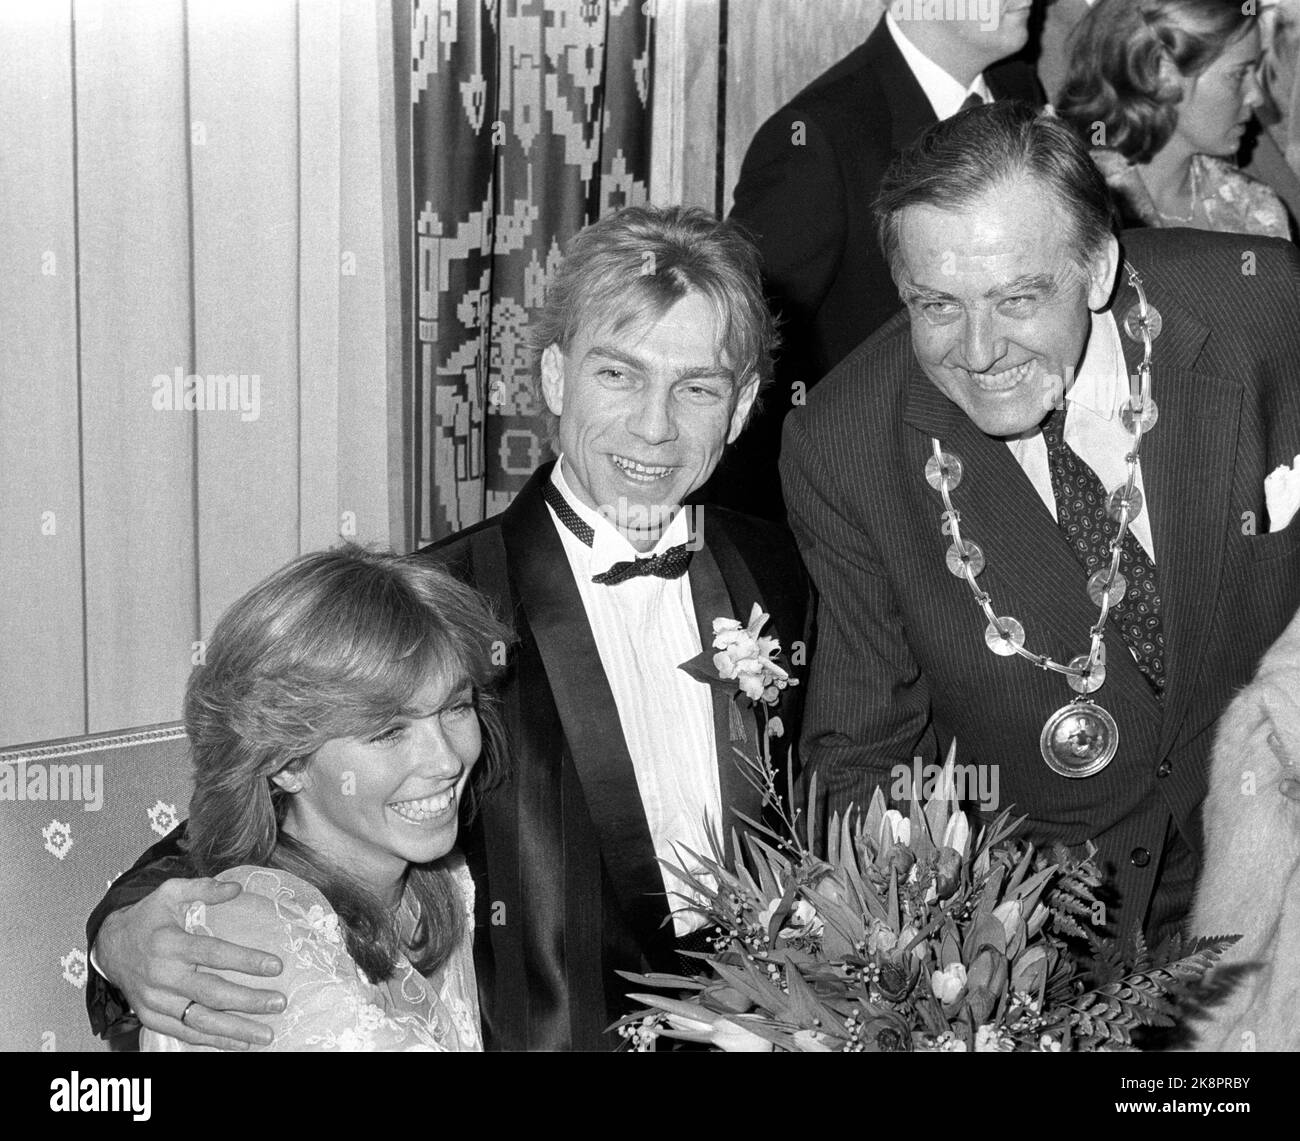 Oslo 1984-02: Matrimonio celebrità. Anita Skorgan e Jahn Teigen sono stati dedicati al municipio di Oslo il 17 febbraio 1984. Qui la coppia nuziale è congratulata dal sindaco di Oslo, Albert Nordengen. Foto: Henrik Laurvik Foto Stock